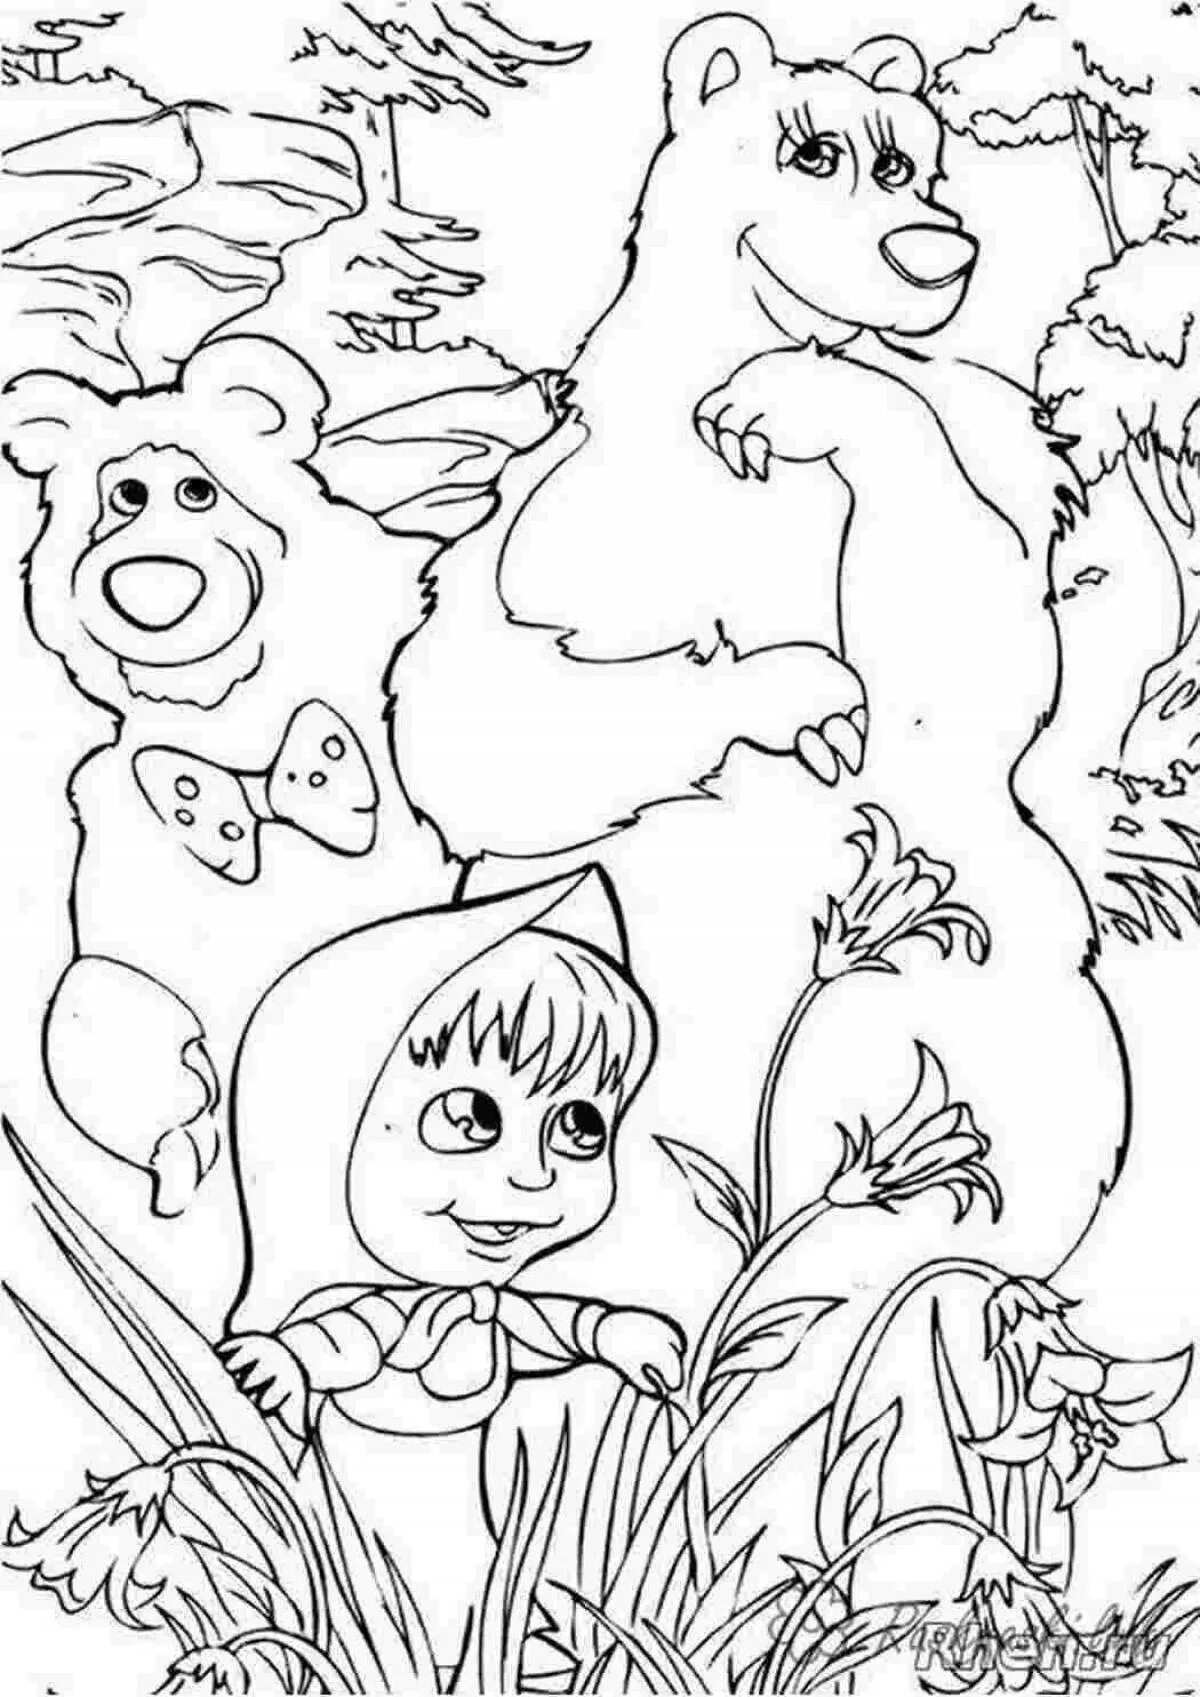 Розмальовки Маша и медведь. Разукрашку Маша и медведь. Раскраски для детей Маша и медведь а4. Разукрашки Маша и медведь Формат а4. Раскраски маша и медведь распечатать формат а4